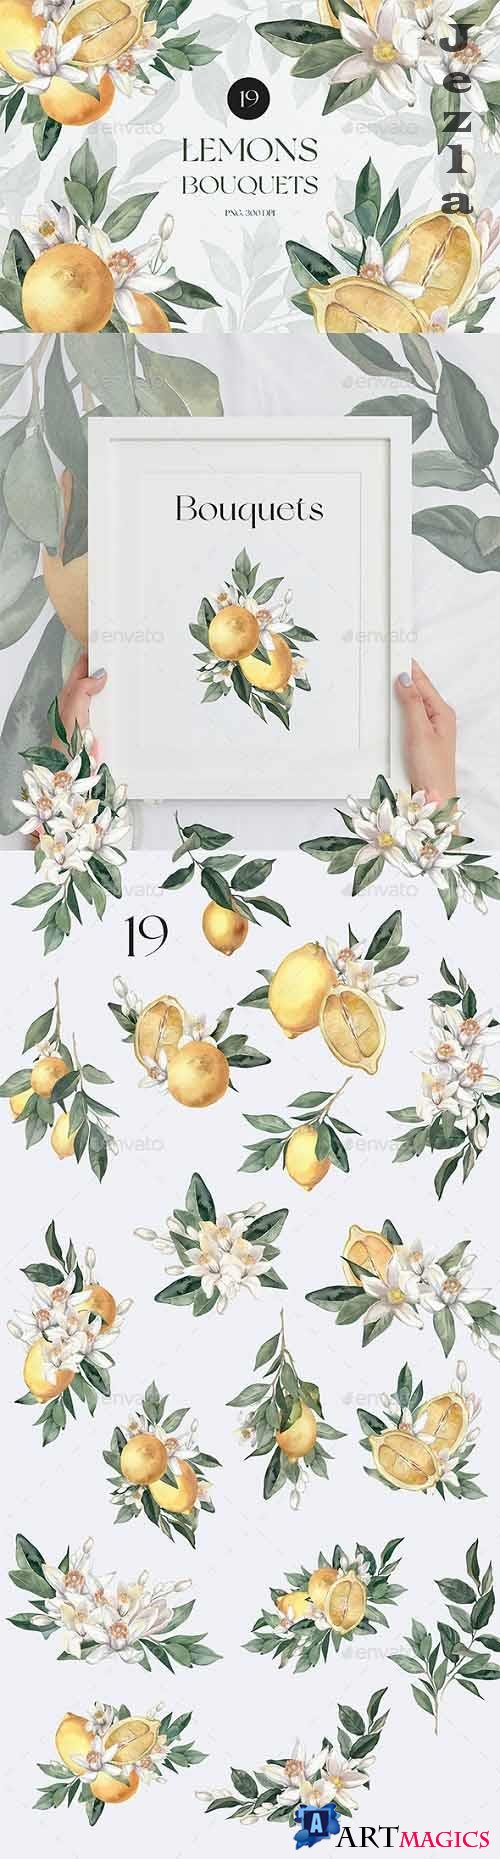 Watercolor Lemon Bouquets - 33231124